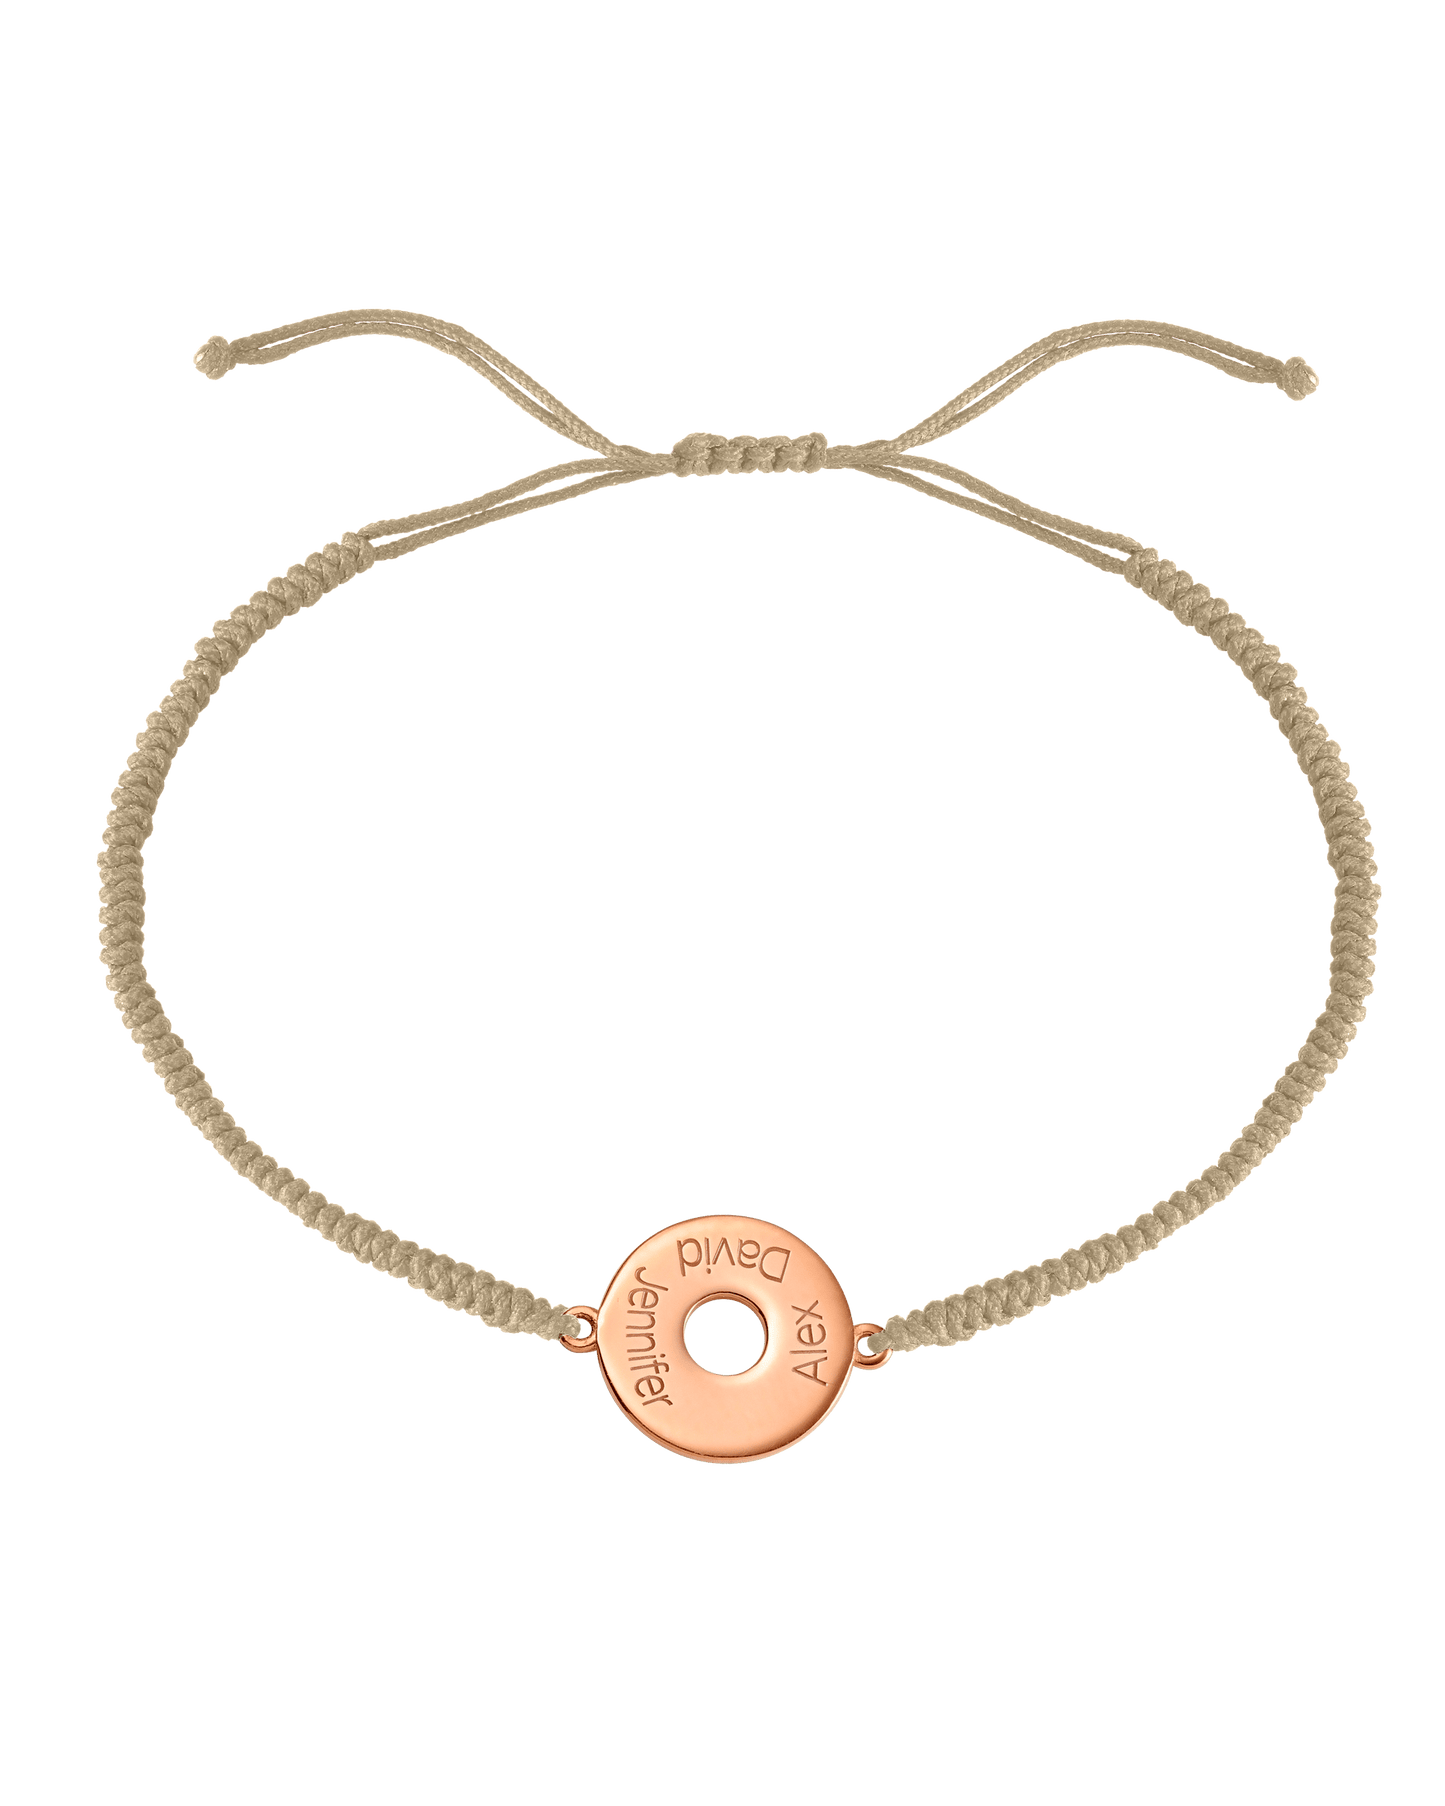 Donut Cord Bracelet - 18K Rose Vermeil Bracelets magal-dev Beige 1 Names Adjustable from 4" to 9"